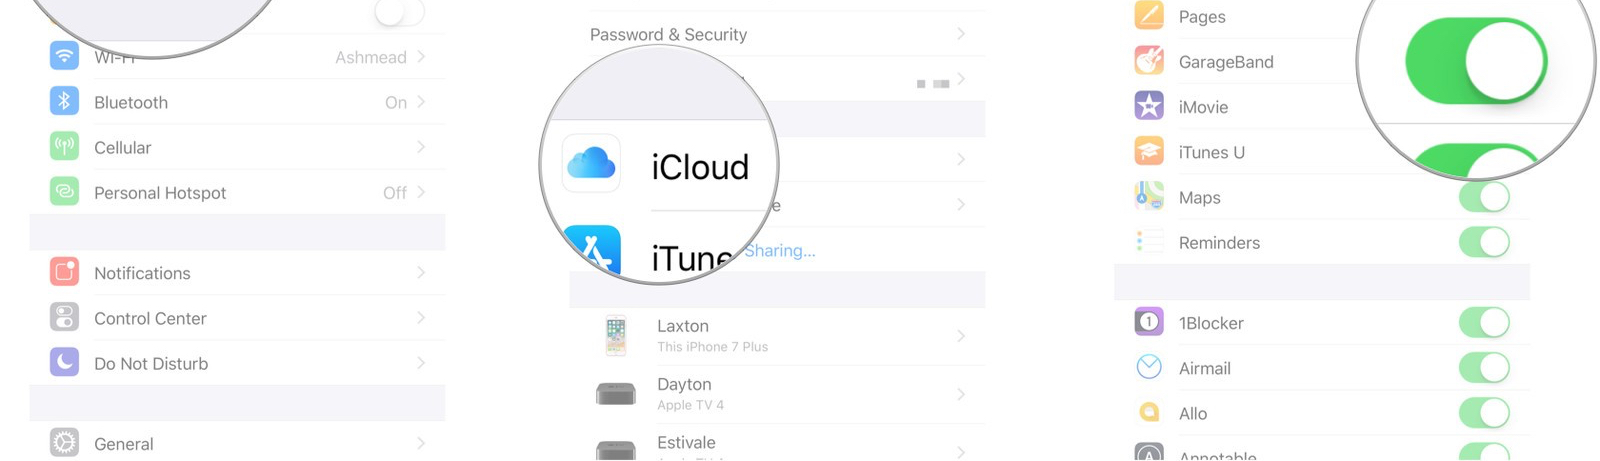 Η Apple εργάζεται για να βρει λύση για την εφαρμογή GarageBand στο iOS 11 - Φωτογραφία 2